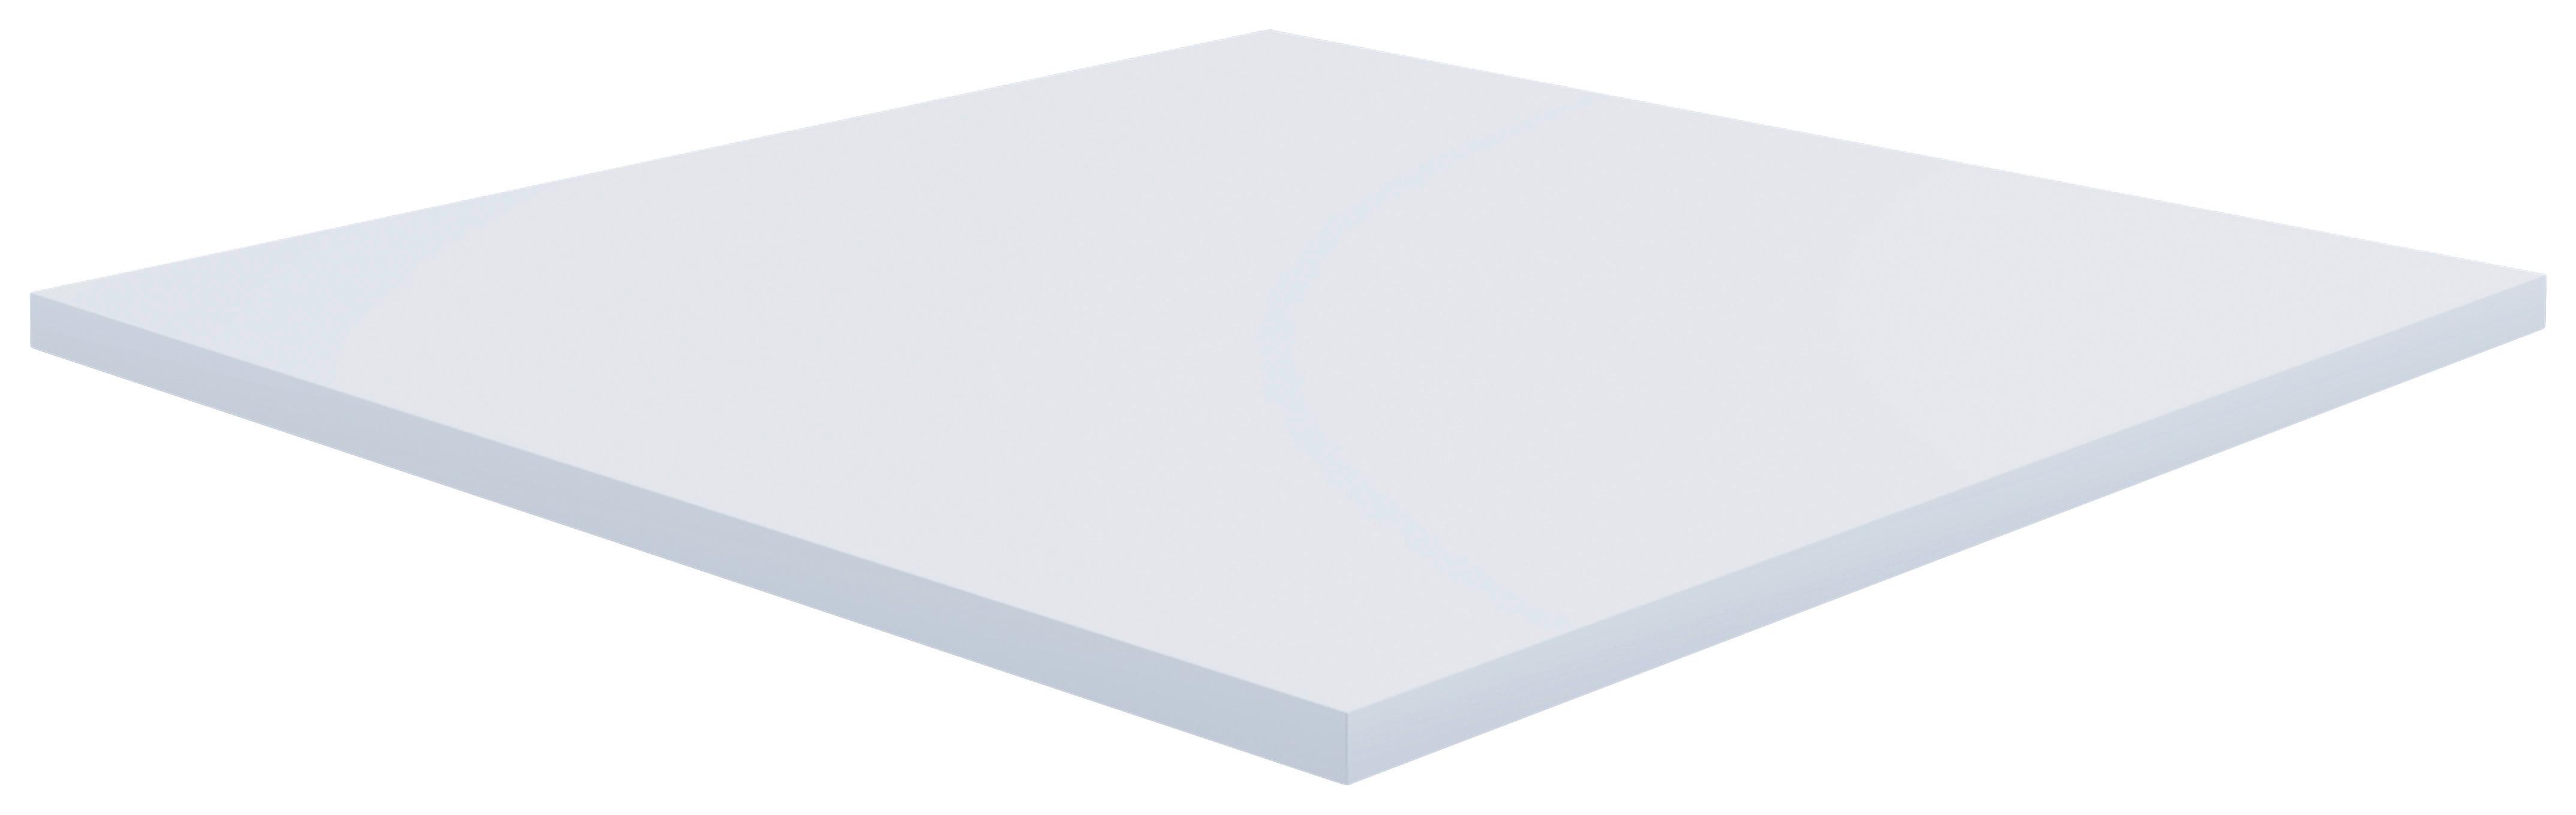 Schreibtischplatte Weiß B: 50 cm